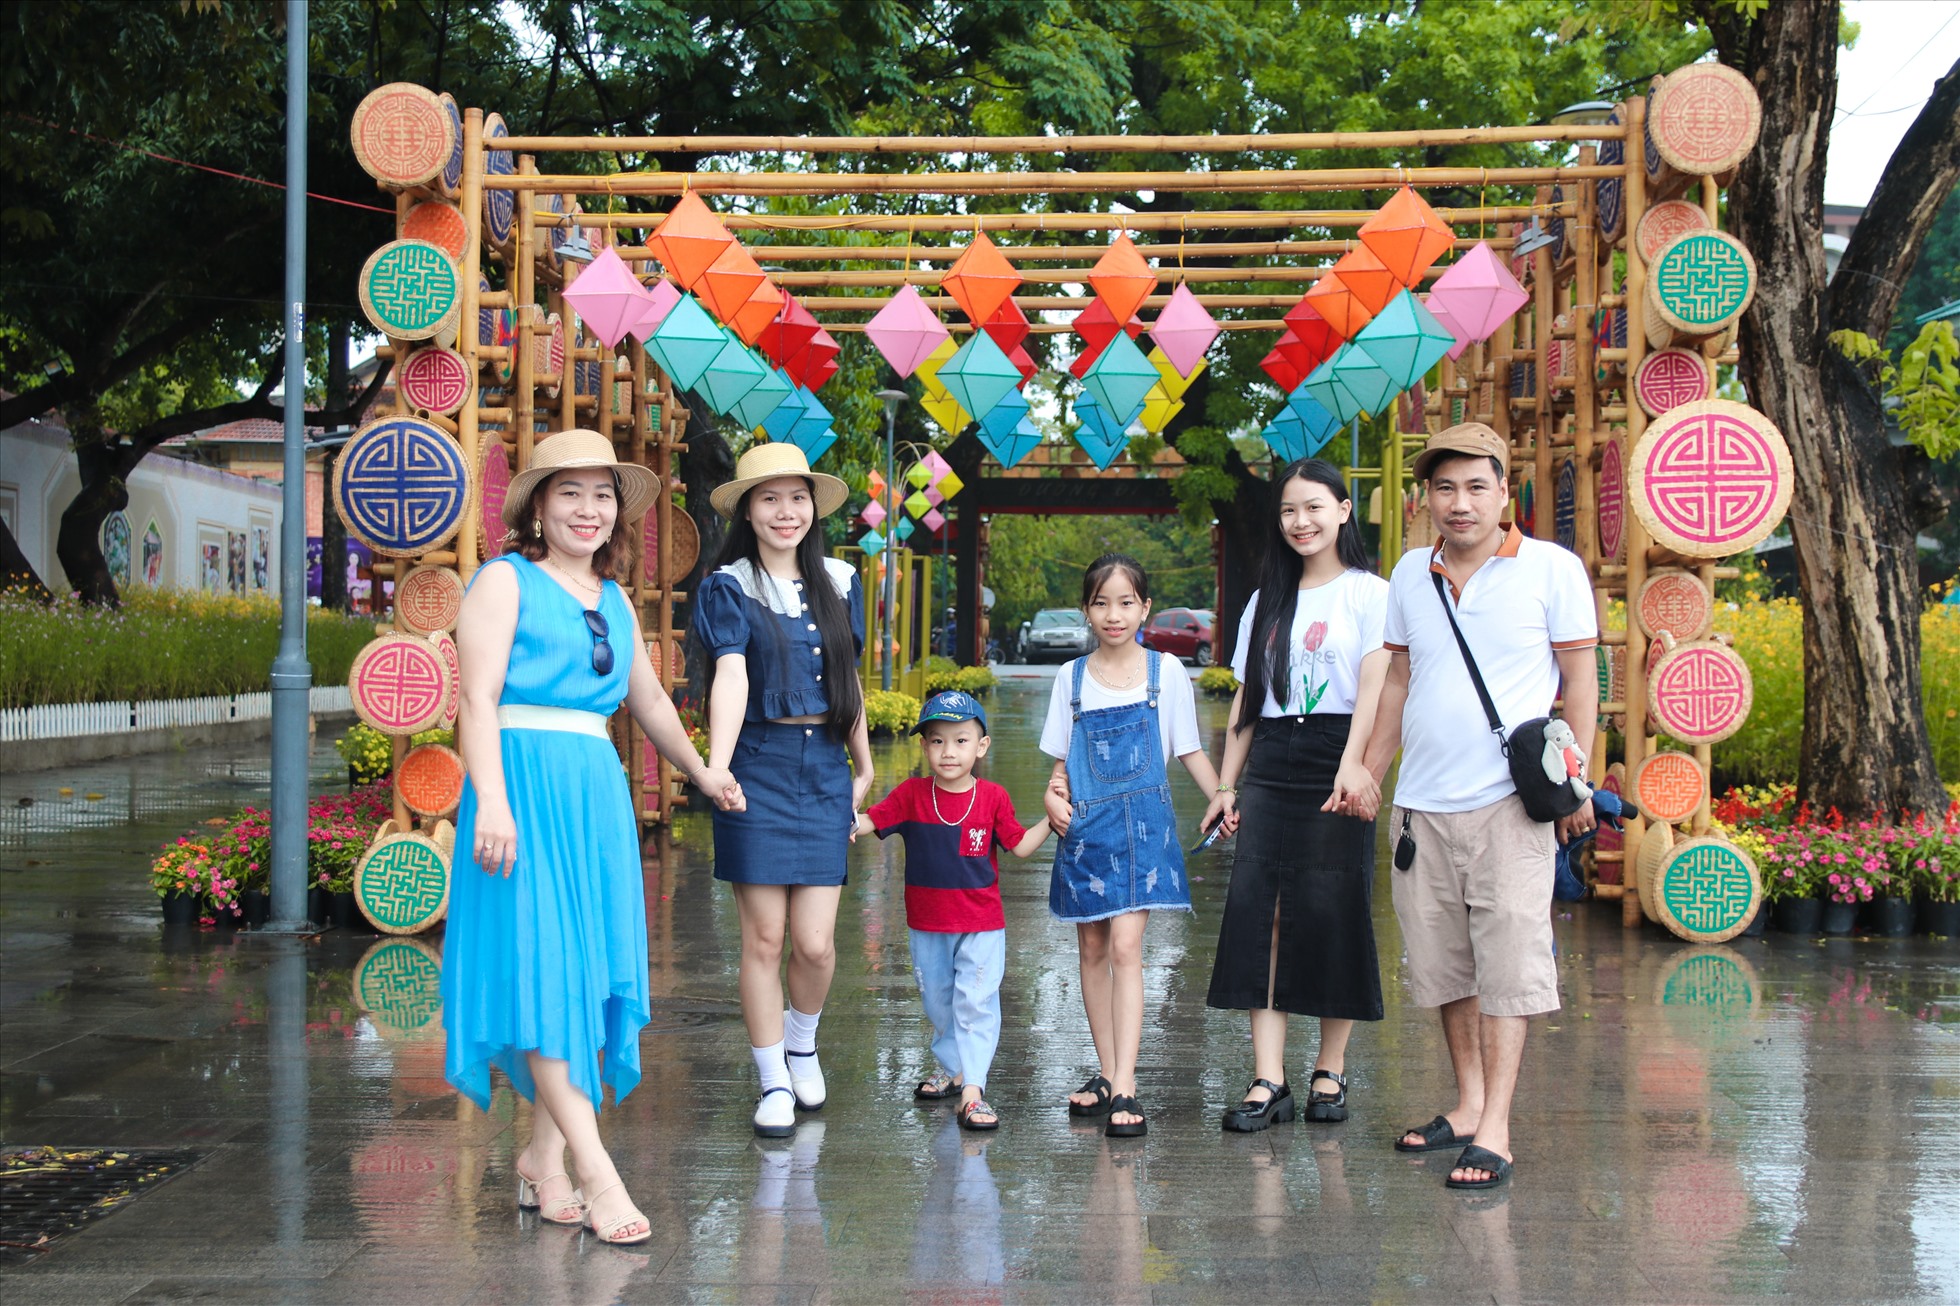 hông gian hoa ở đường đi bộ Nguyễn Đình Chiểu là nơi thu hút đông đảo người dân và du khách đến check-in bên cạnh là những chiếc ô.